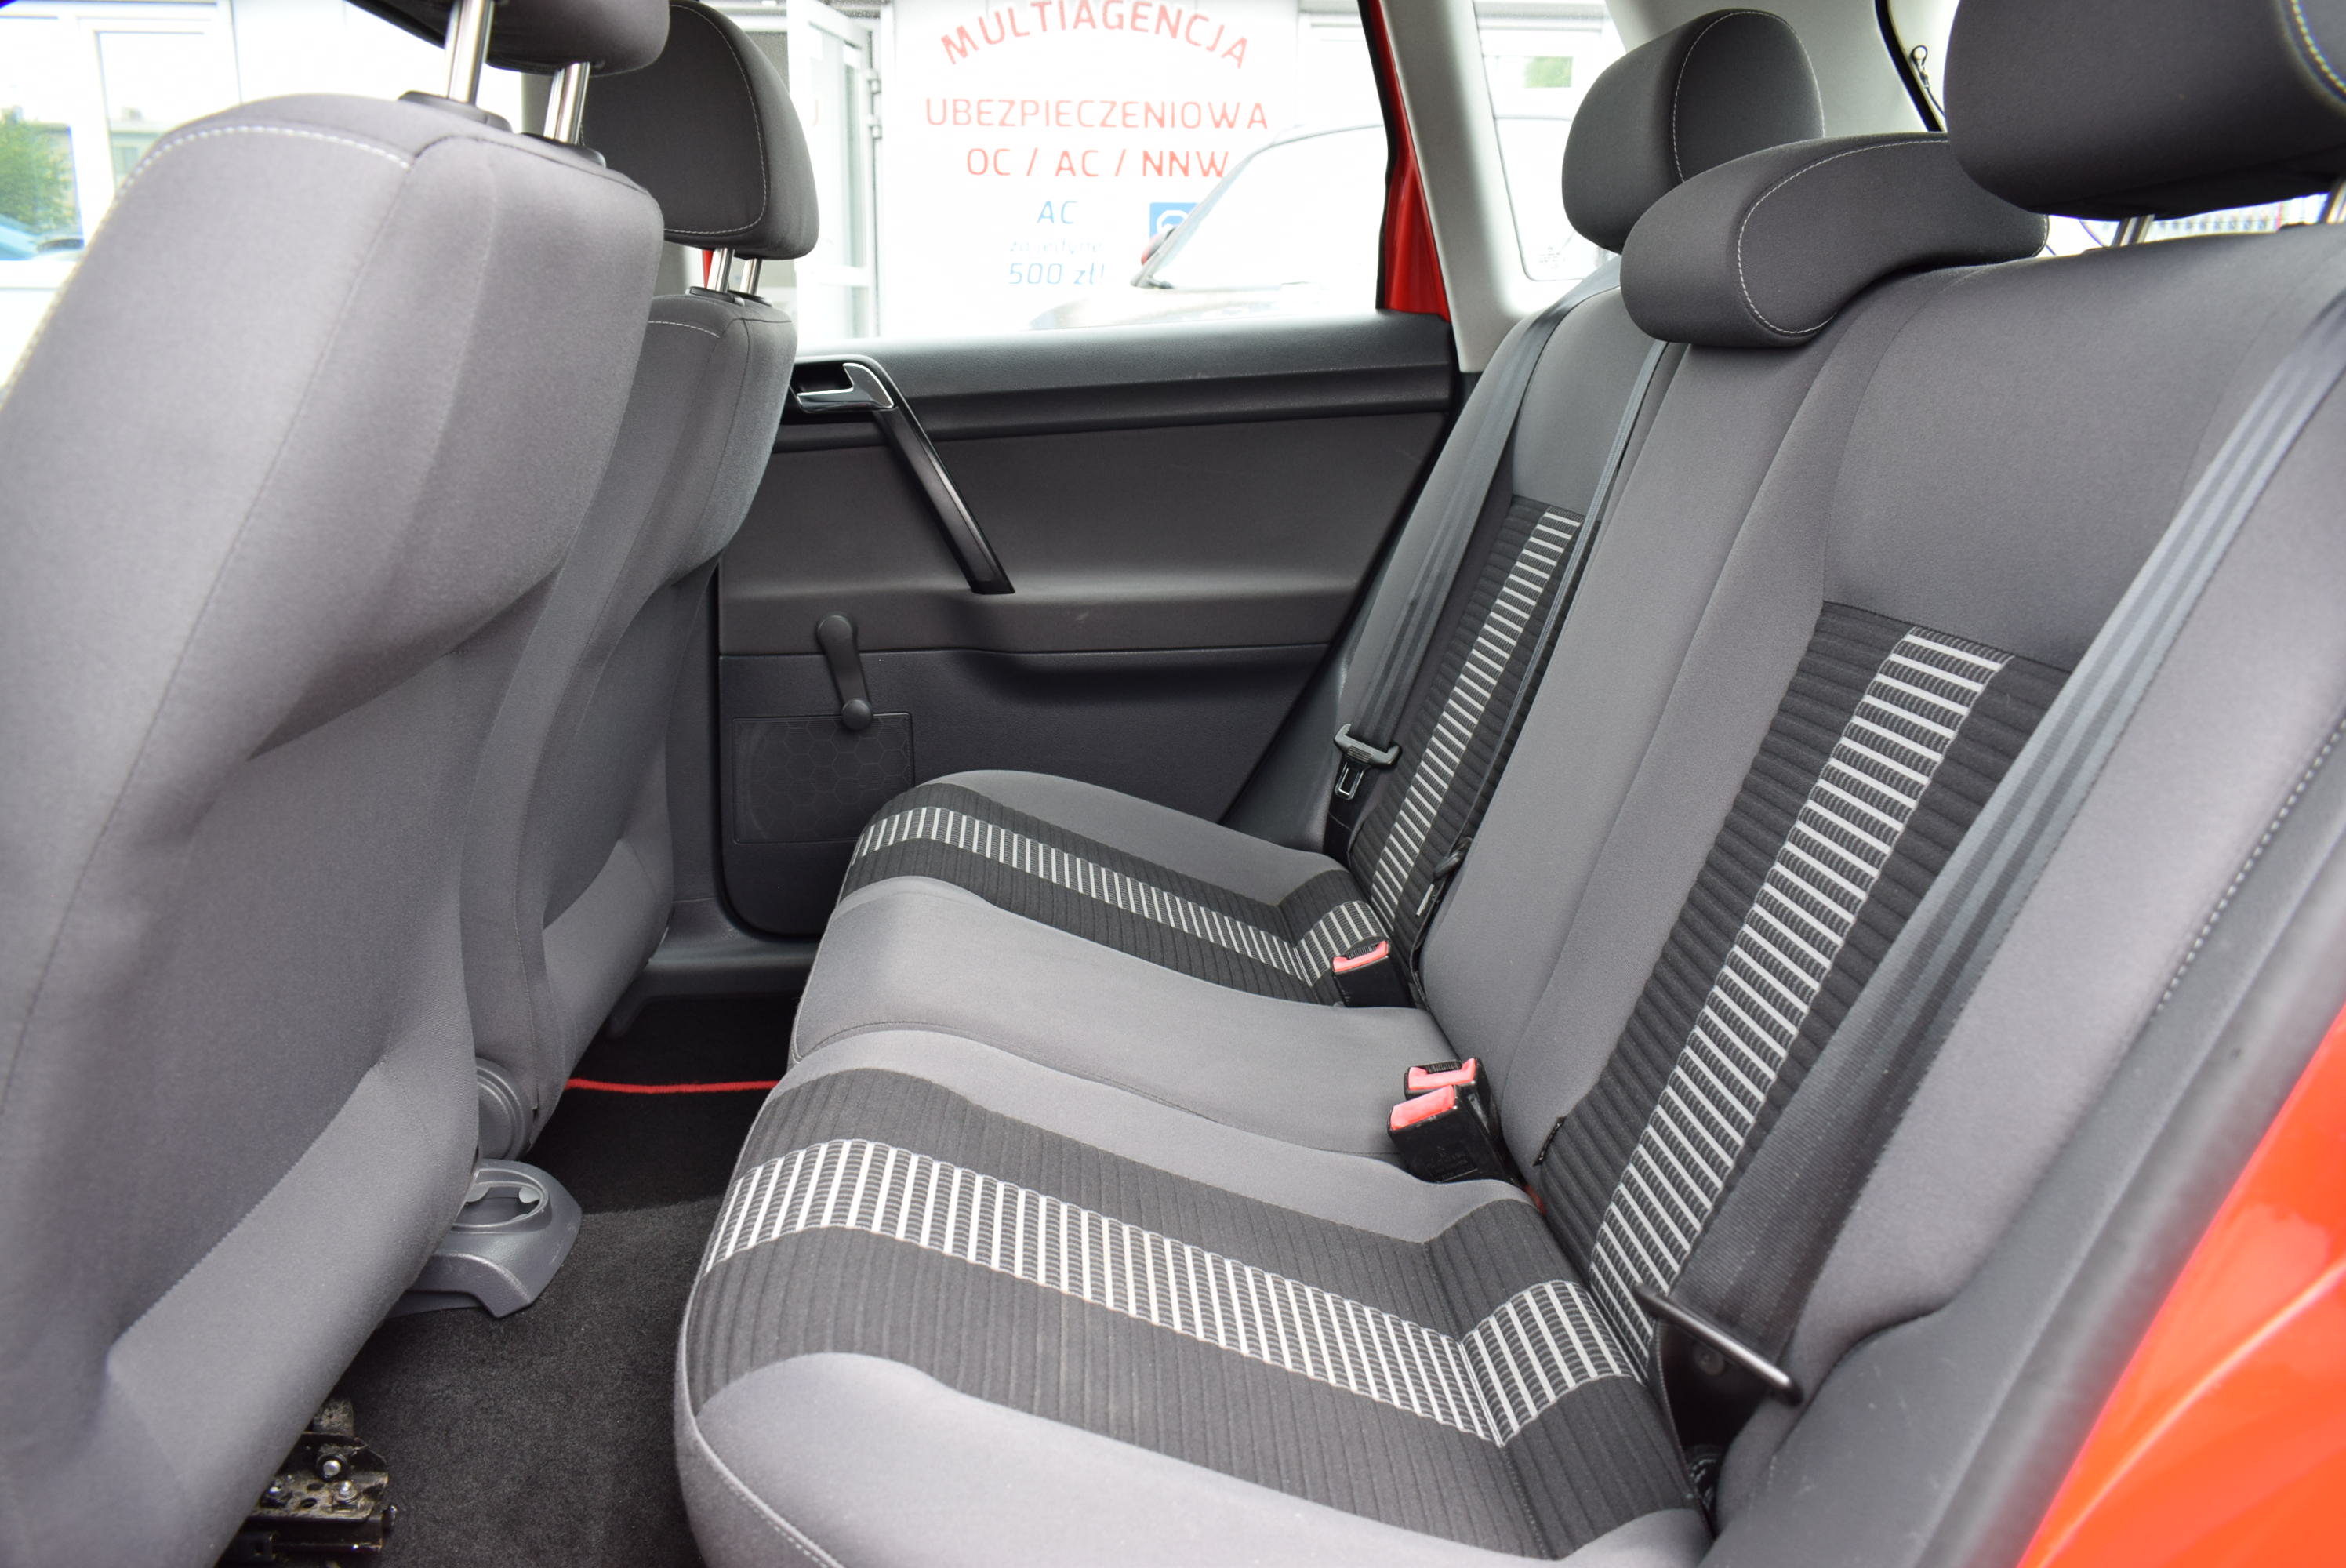 VW Polo 1.2 Benzyna, 5-drzwi, Czerwony, Klimatyzacja, Zadbany, Rok Gwarancji full